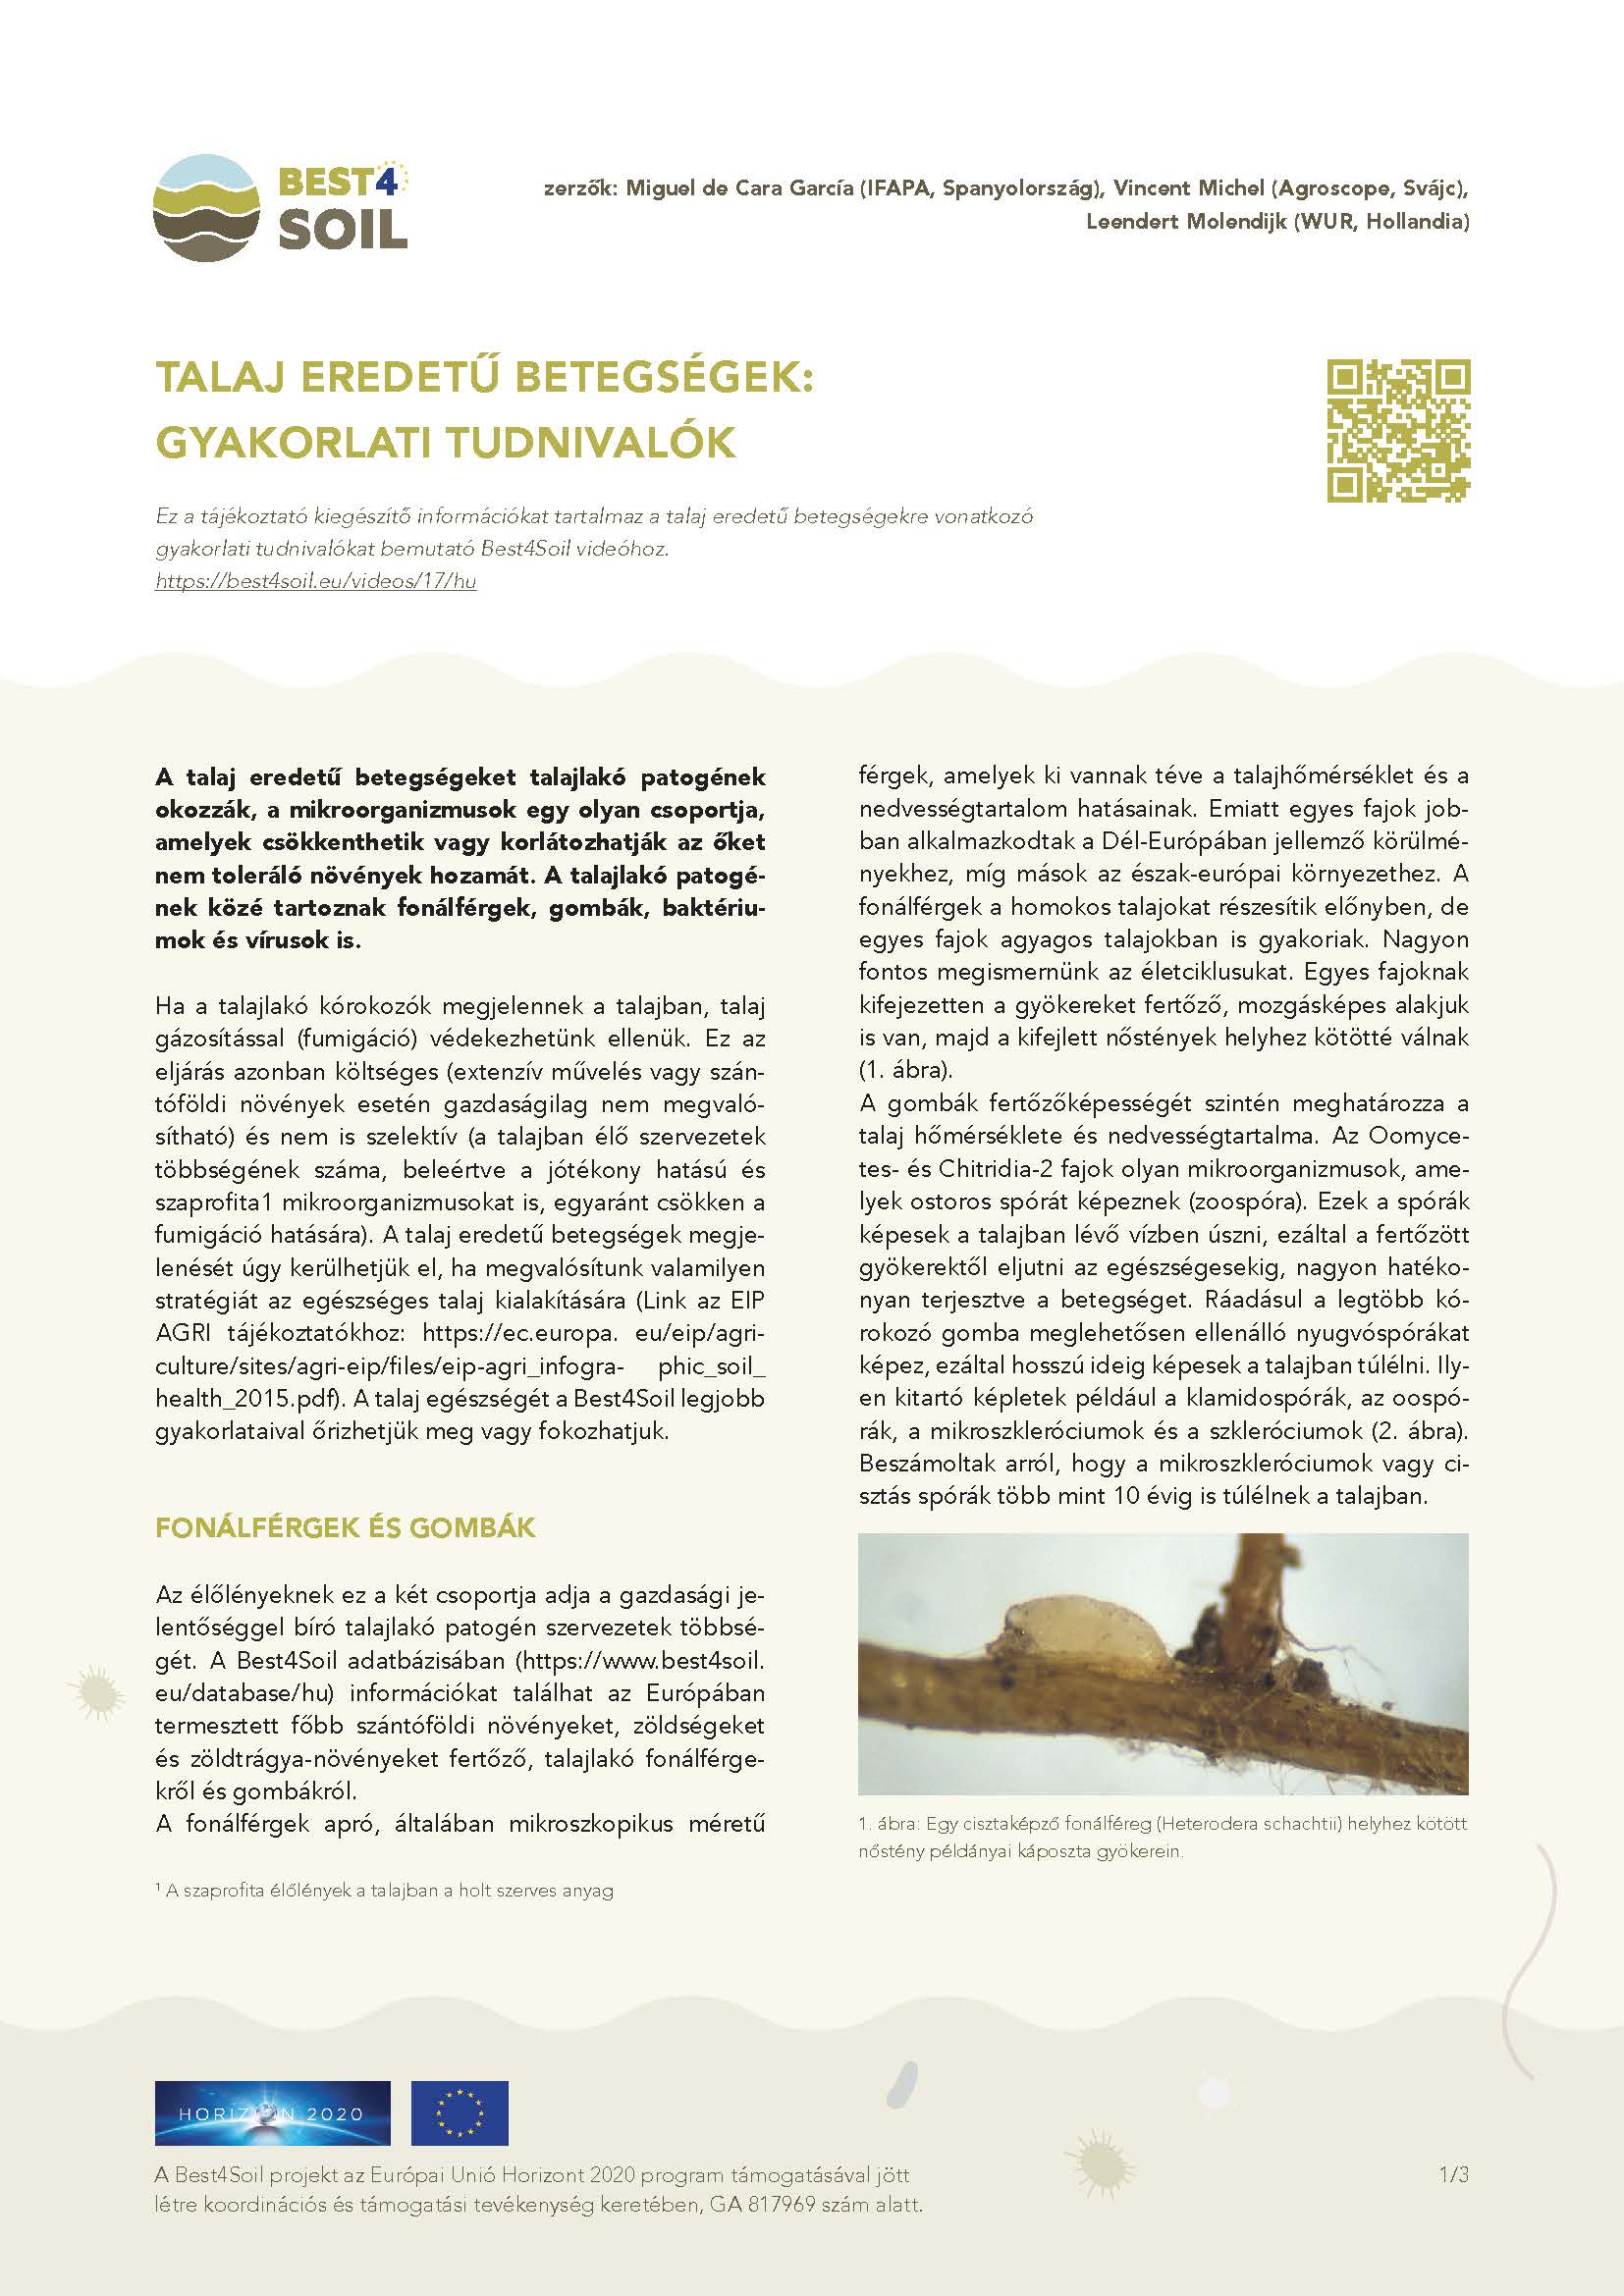 Choroby przenoszone przez glebę: Informacje praktyczne (broszura informacyjna Best4Soil)